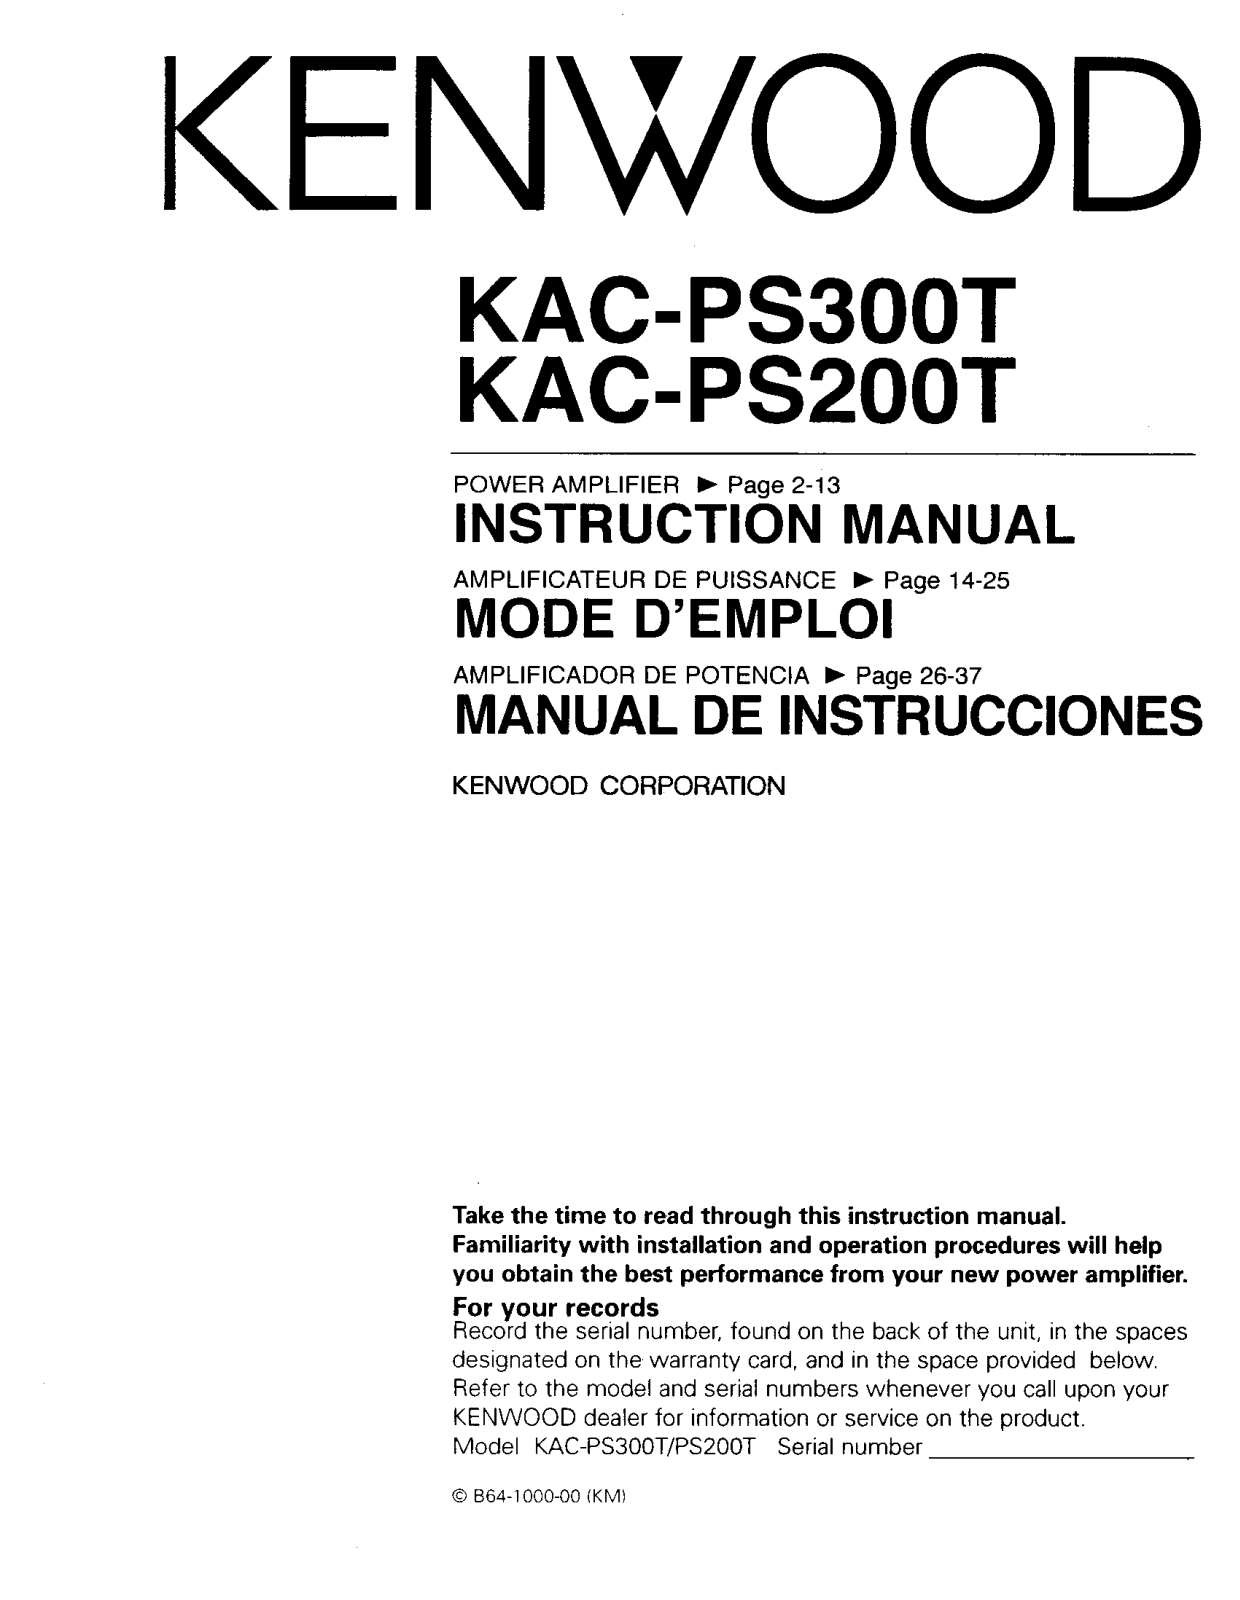 Kenwood KAC-PS200T, KAC-PS300T Owner's Manual